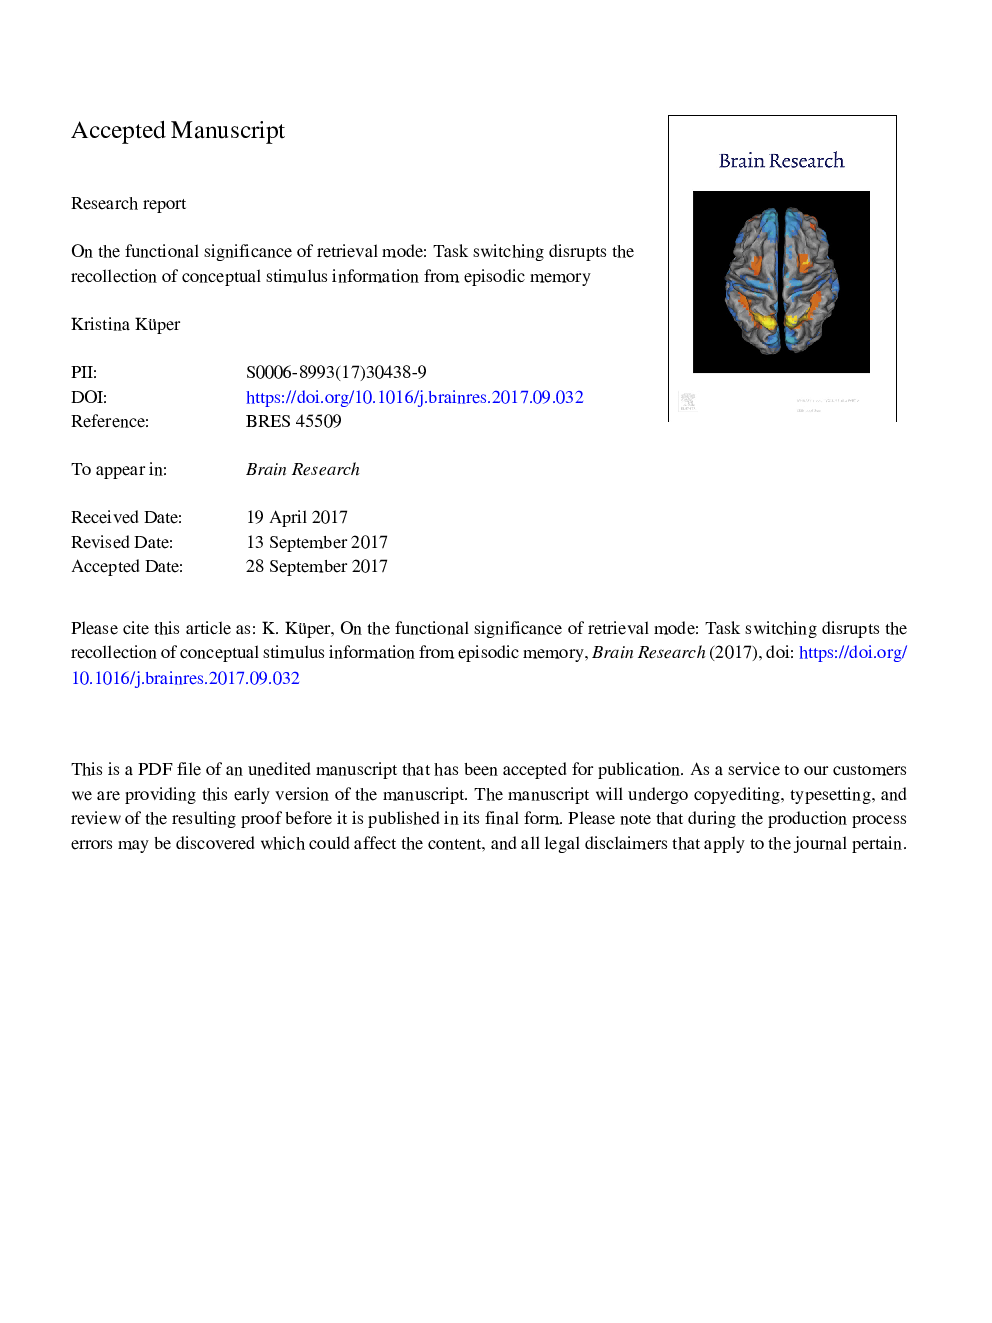 در اهمیت عملکردی حالت بازیابی: تعویض وظیفه یادآوری اطلاعات محرک مفهومی از حافظه اپیزودیک را مختل می کند